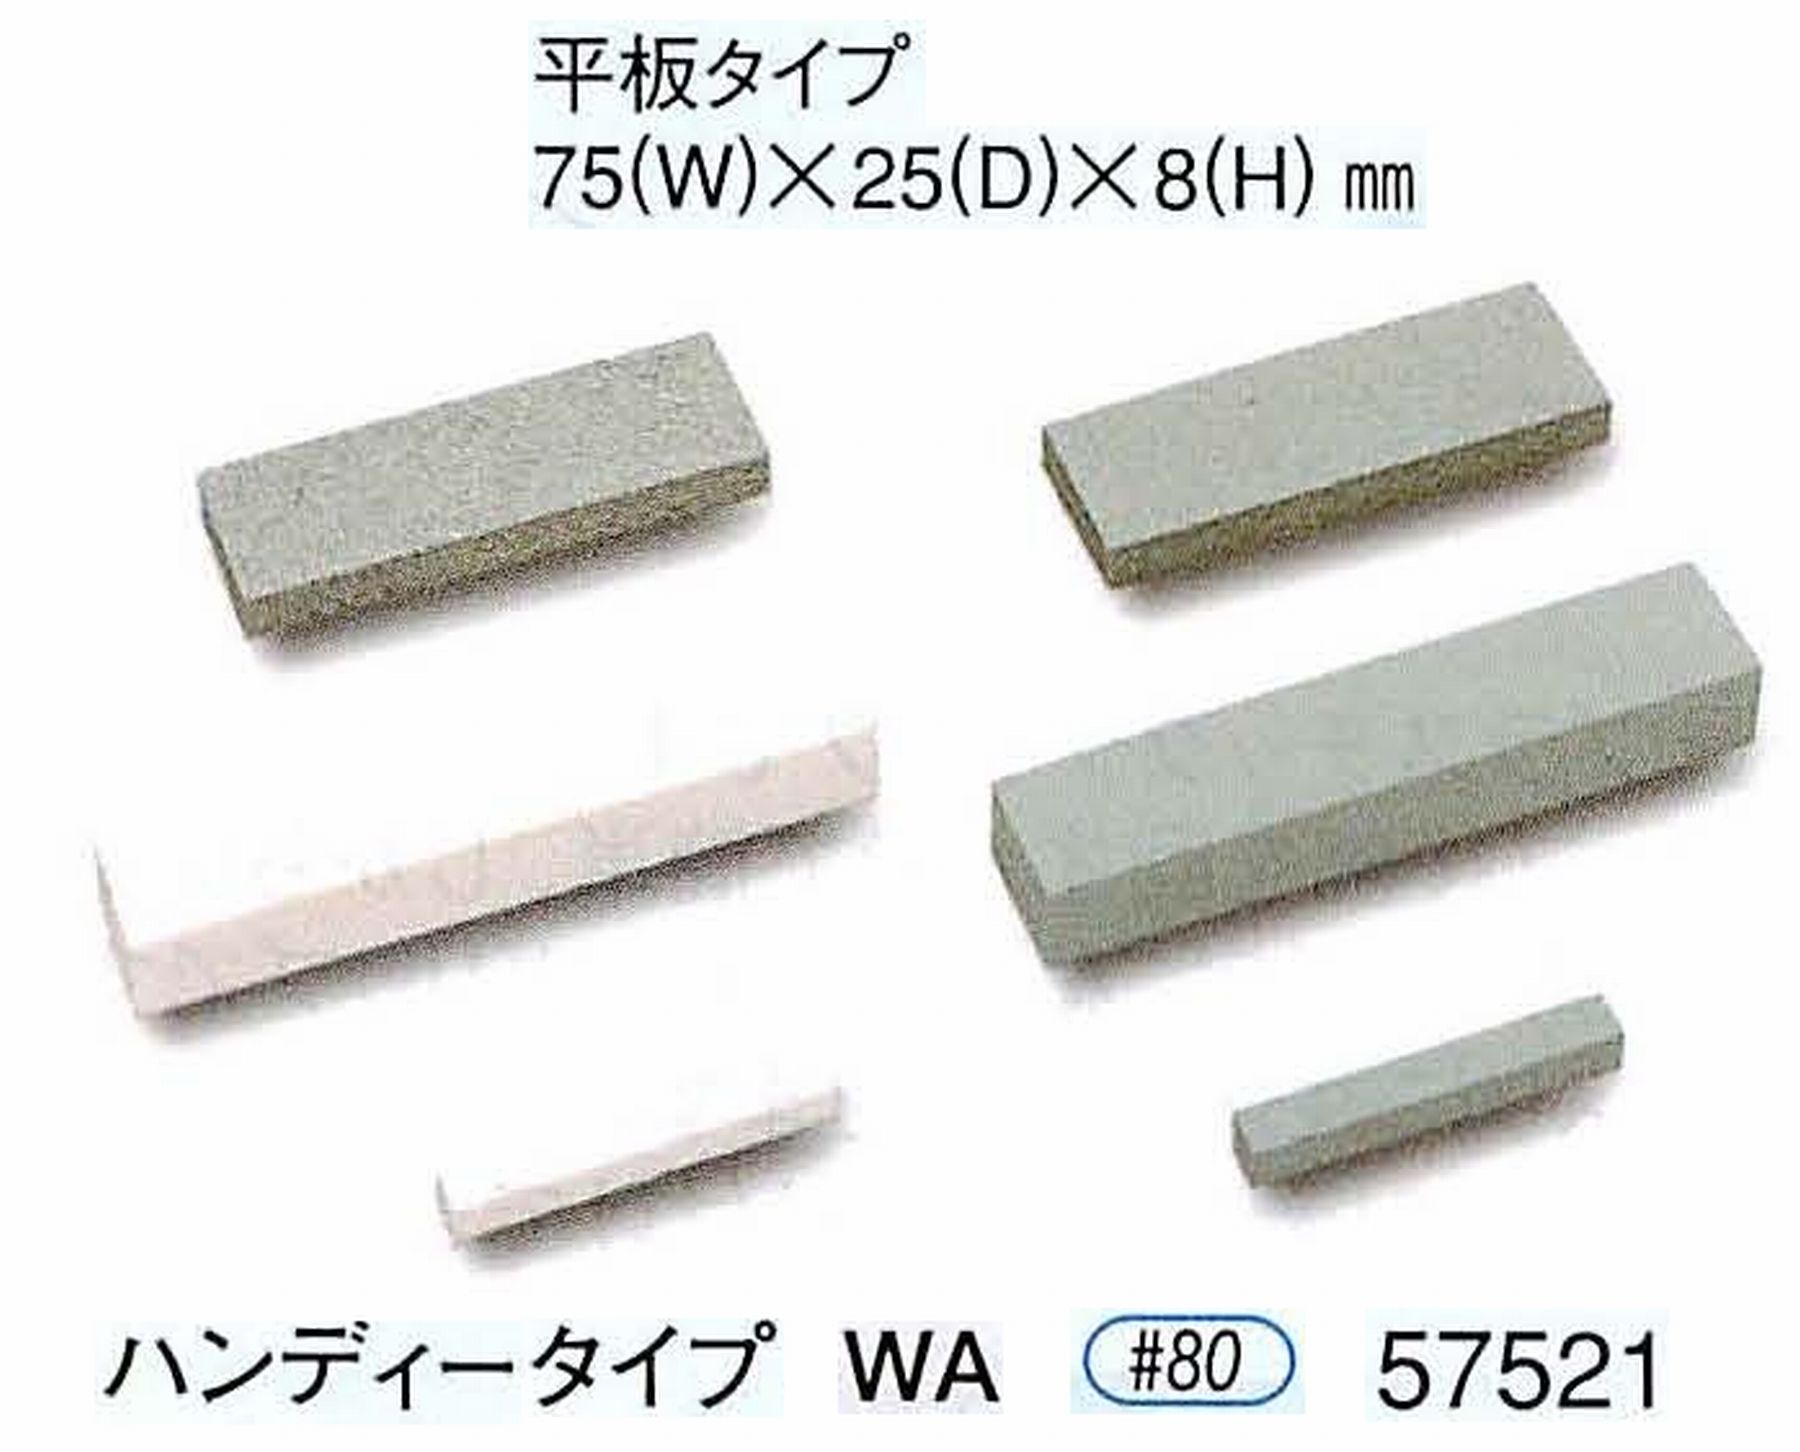 ナカニシ/NAKANISHI 砥石ドレッサ ハンディータイプ WA 57521